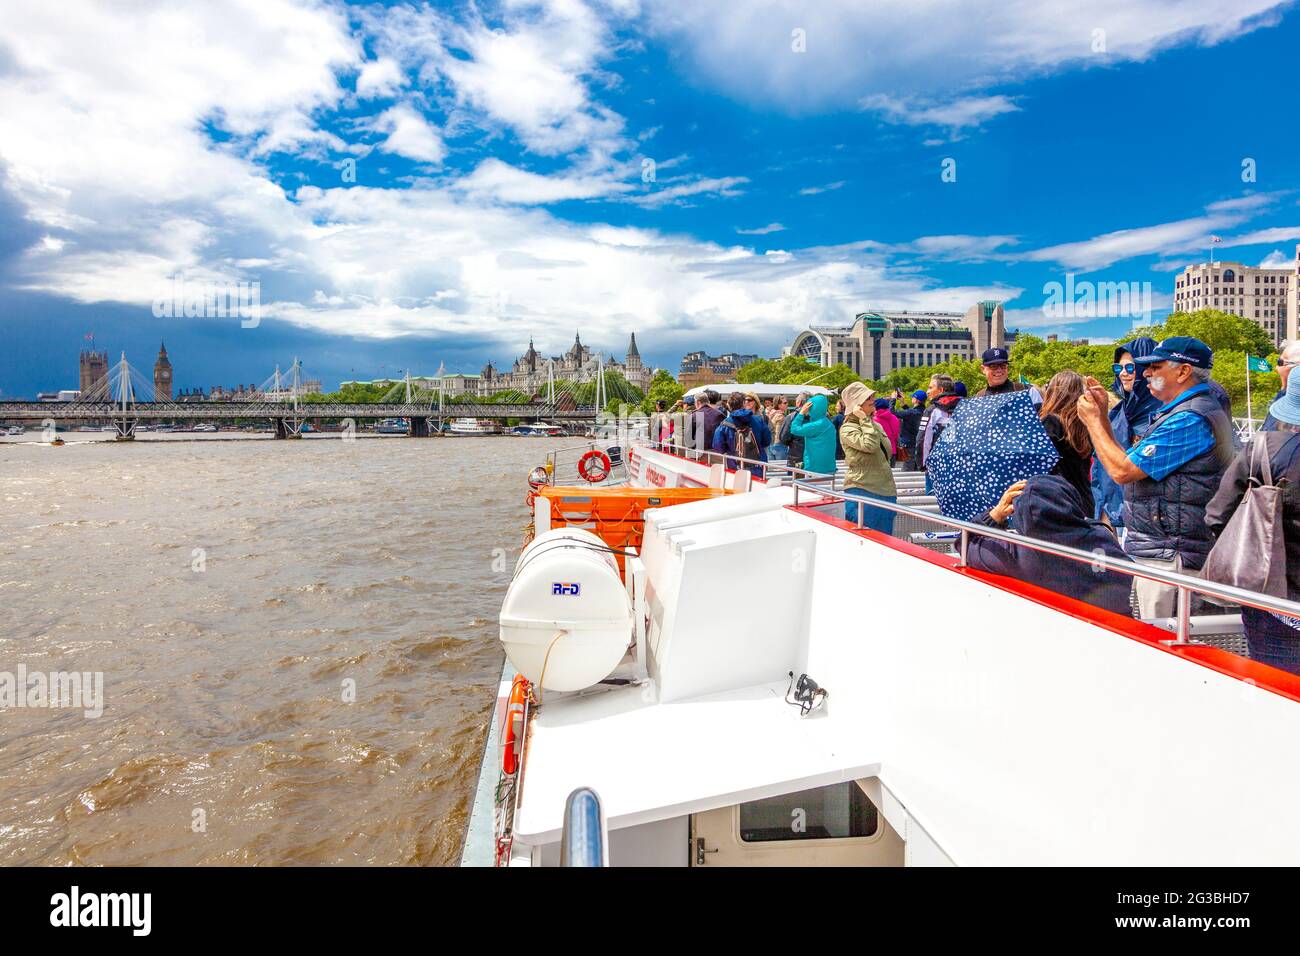 Touristes profitant d'une croisière sur la Tamise à bord d'un bateau avec Big Ben et le Parlement en face, Londres, Royaume-Uni Banque D'Images